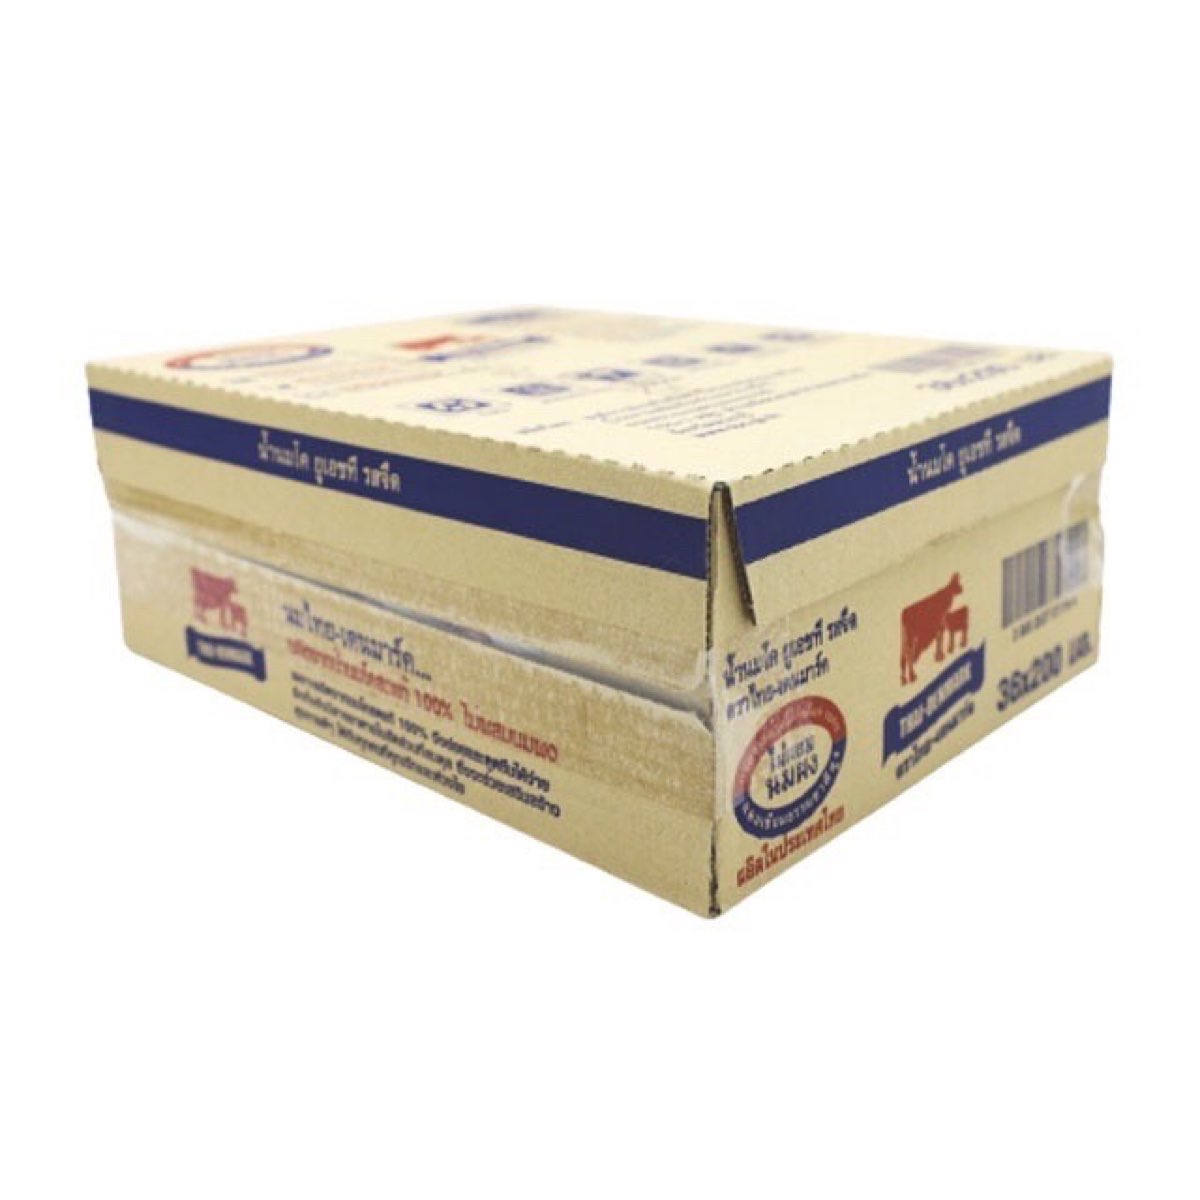 นมไทย-เดนมาร์ค รสจืด ขนาด 200 ml. บรรจุ 36 กล่อง 